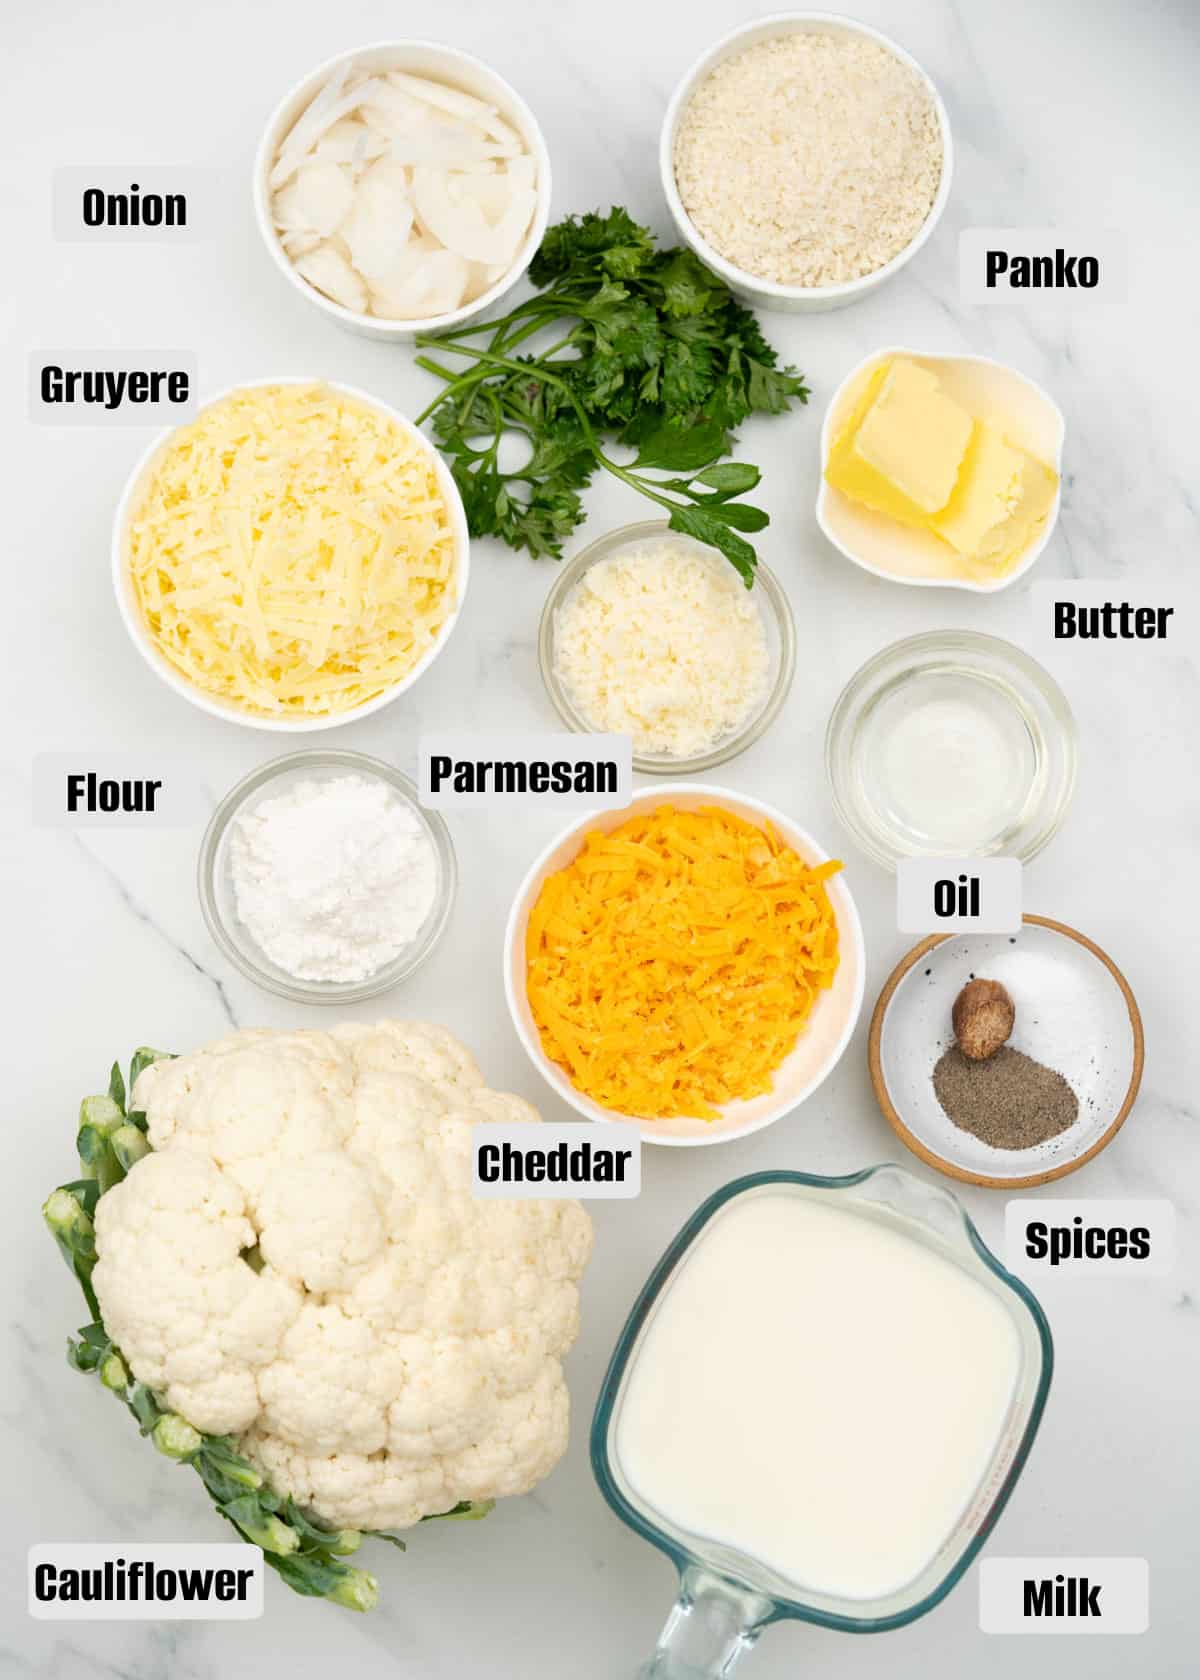 Ingredients to make a rich and indulgent Cauliflower au gratin.